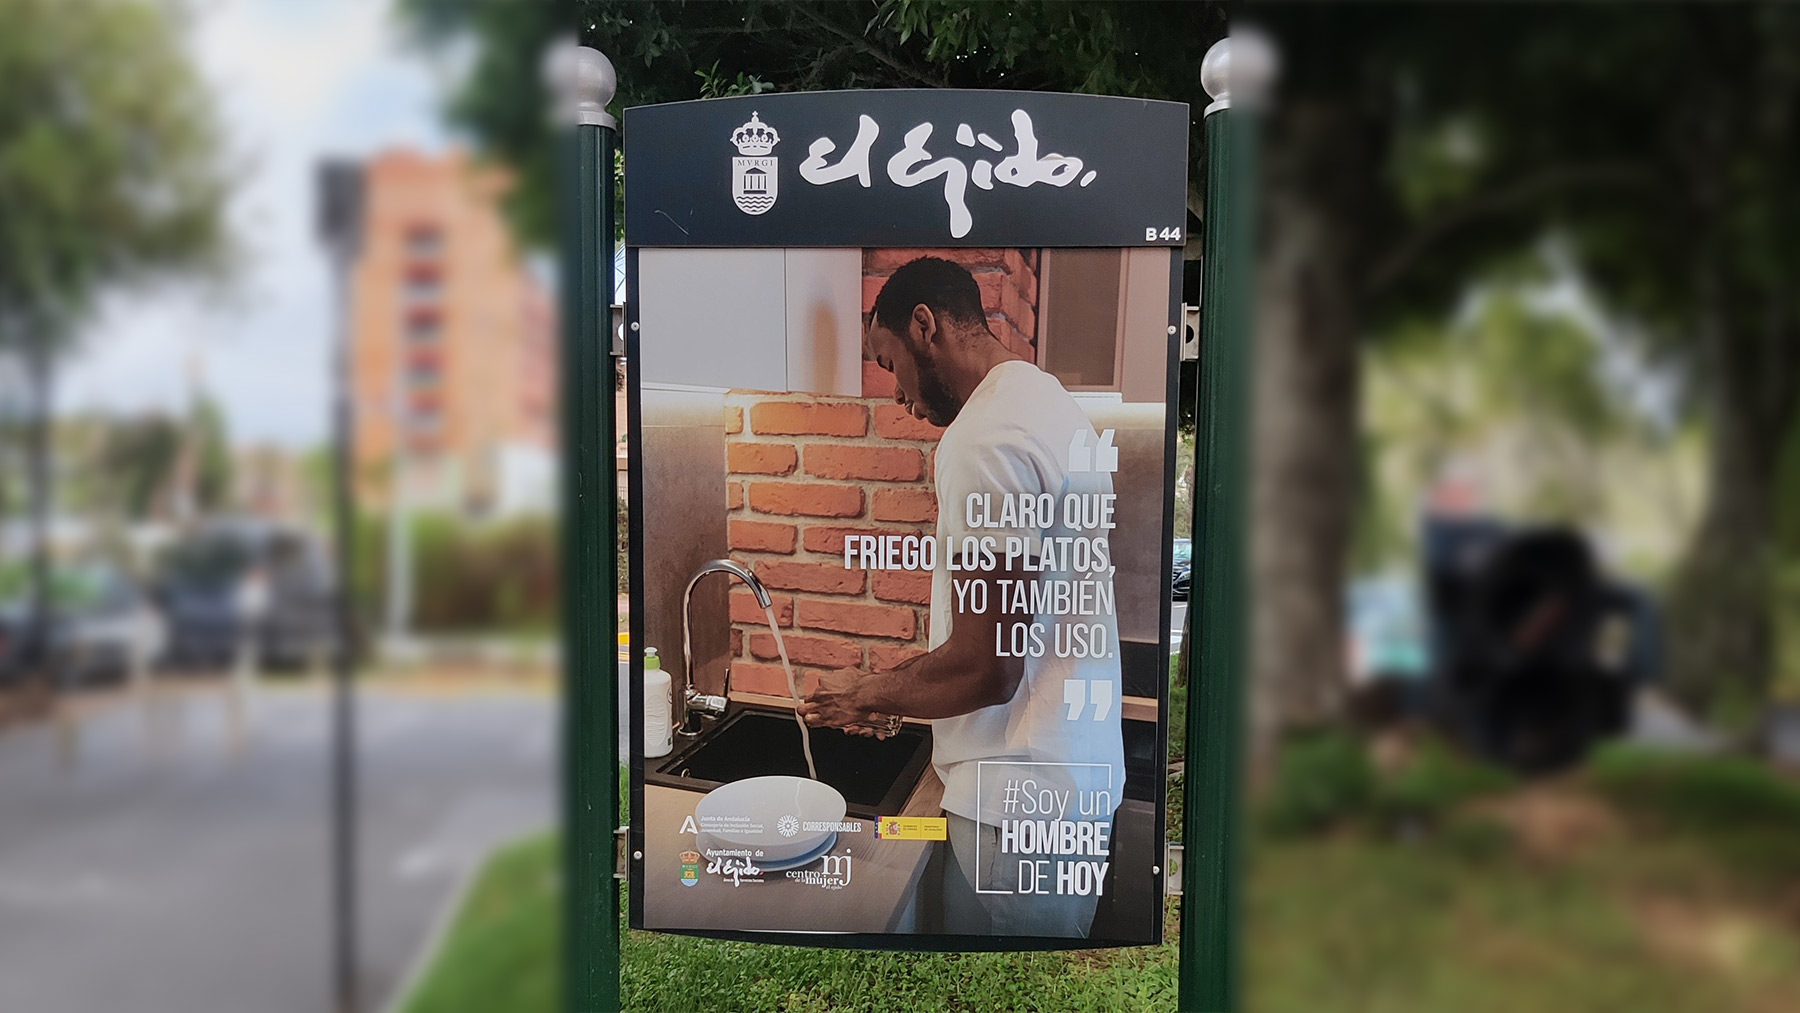 Campaña publicitaria del Ayuntamiento de El Ejido.